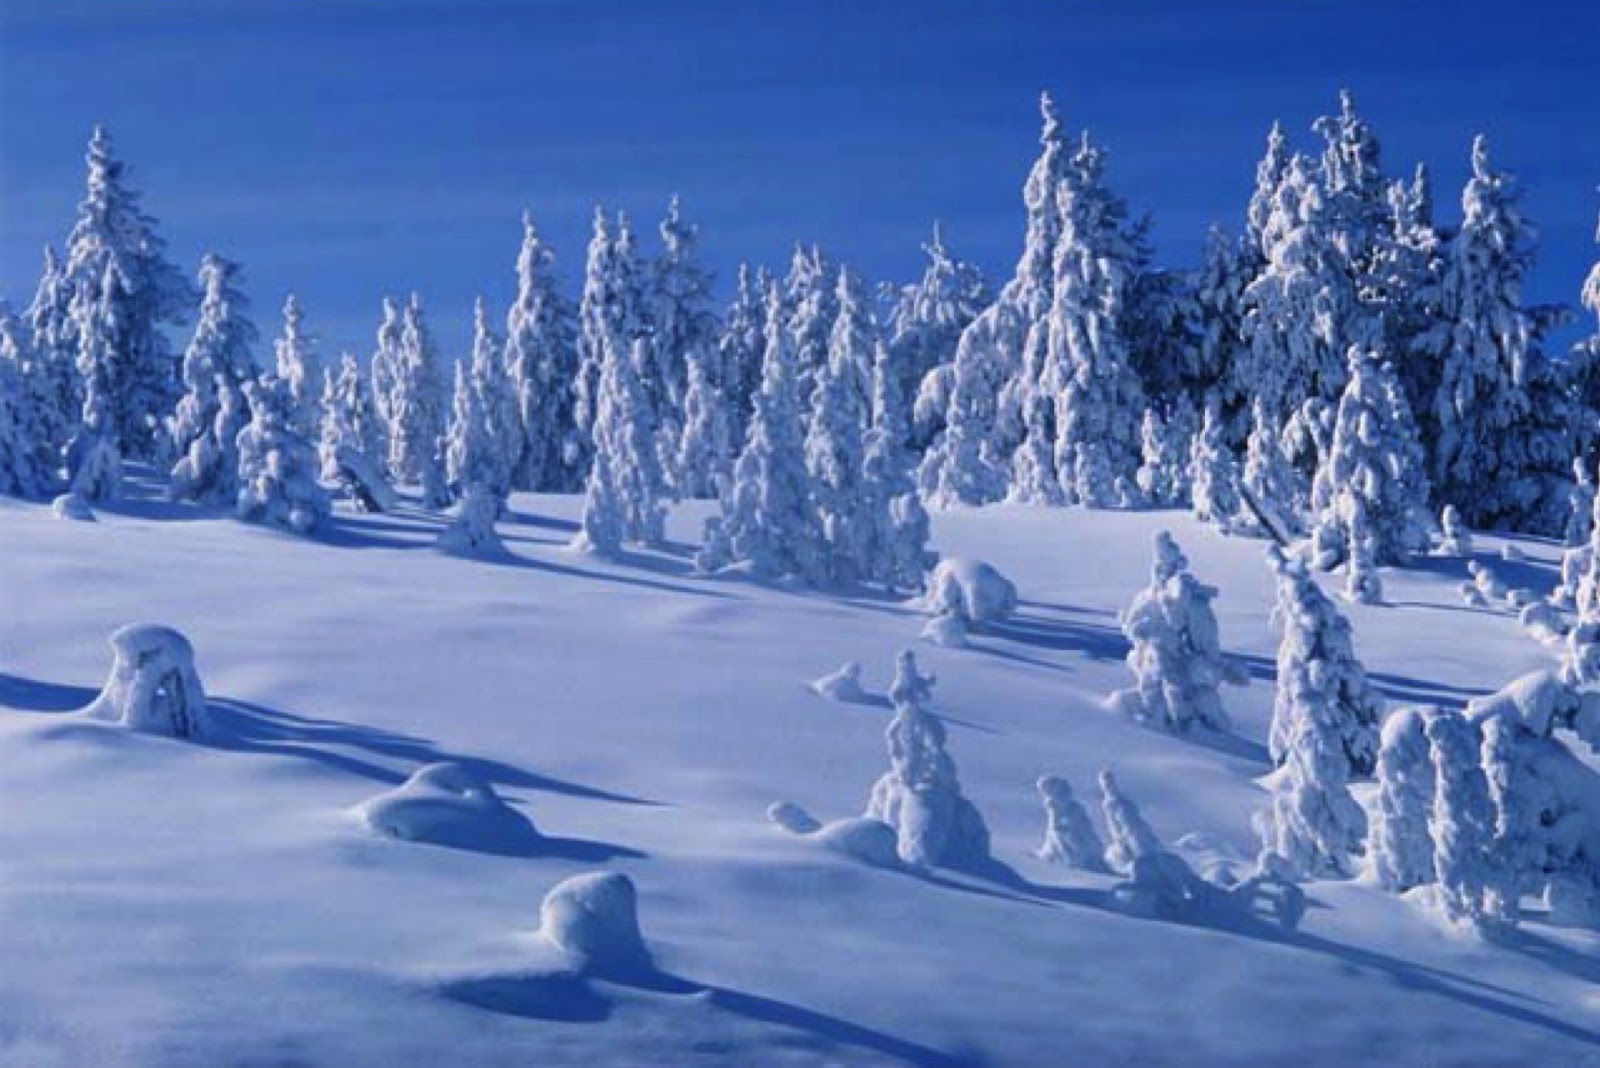 Снежные сугробы покрылись. Снег на земле. Зимний лес под снежным покрывалом. Зимняя пора. Снежная земля.